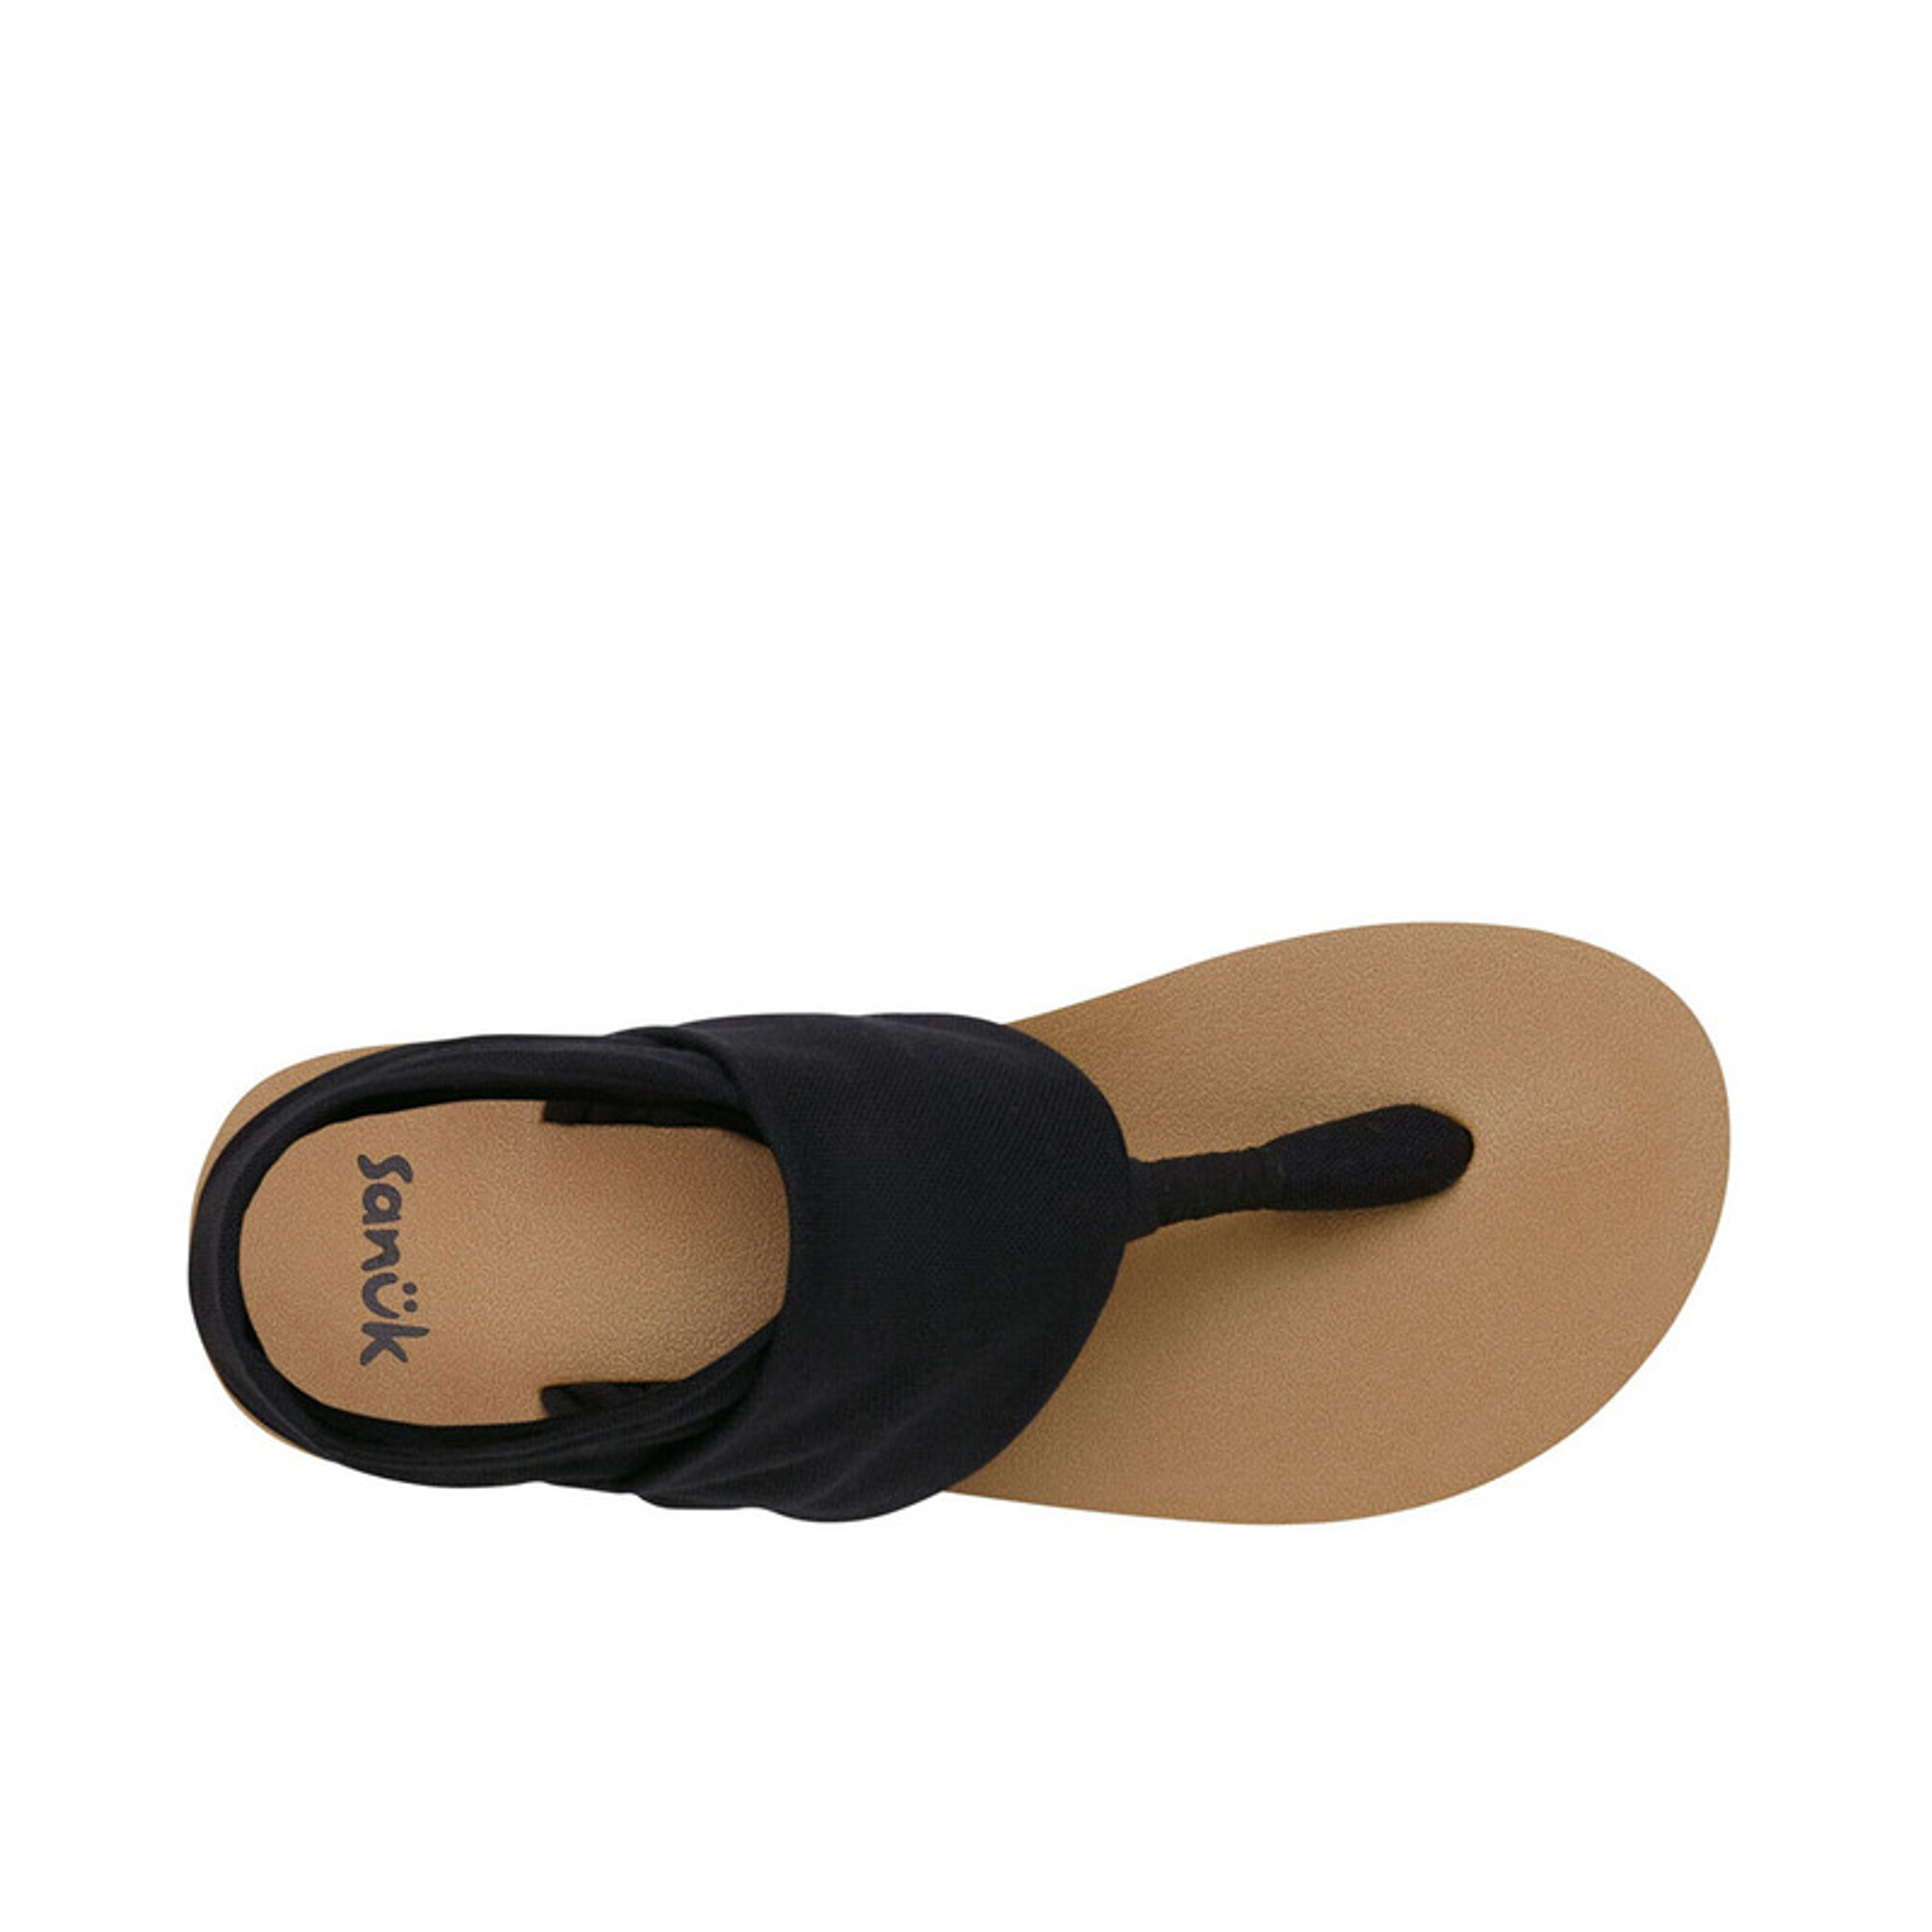 Sanuk Foam Sandals for Women